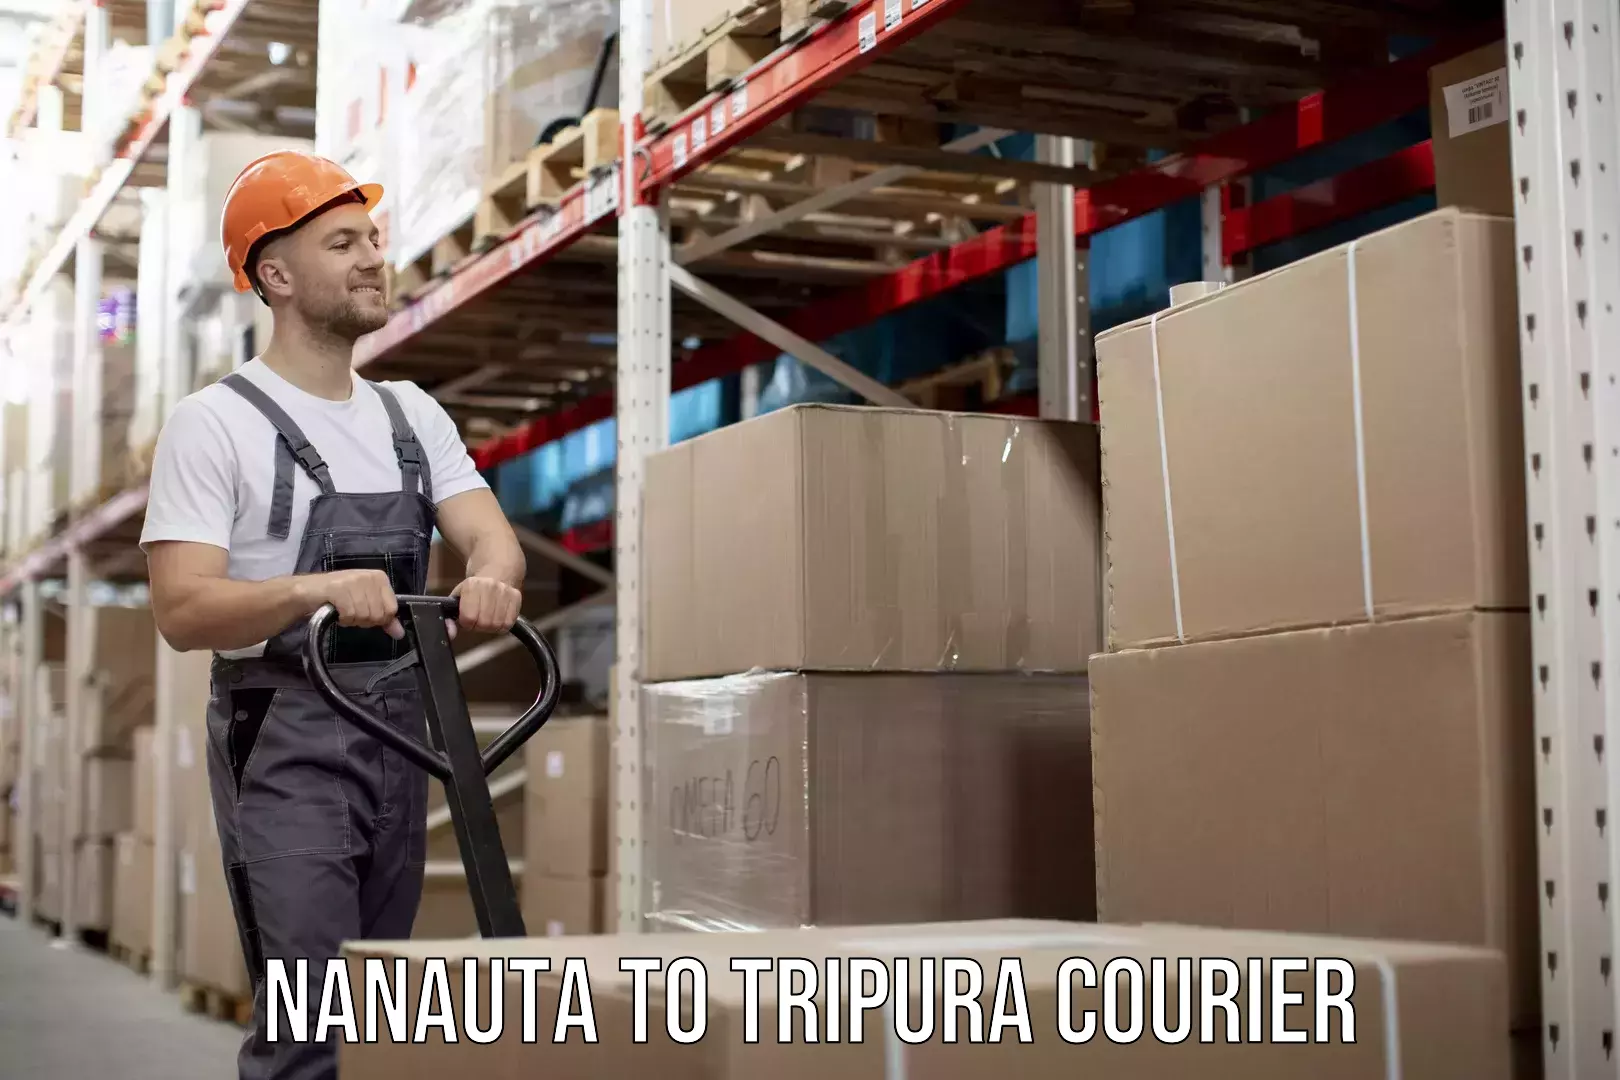 Reliable furniture movers Nanauta to Tripura